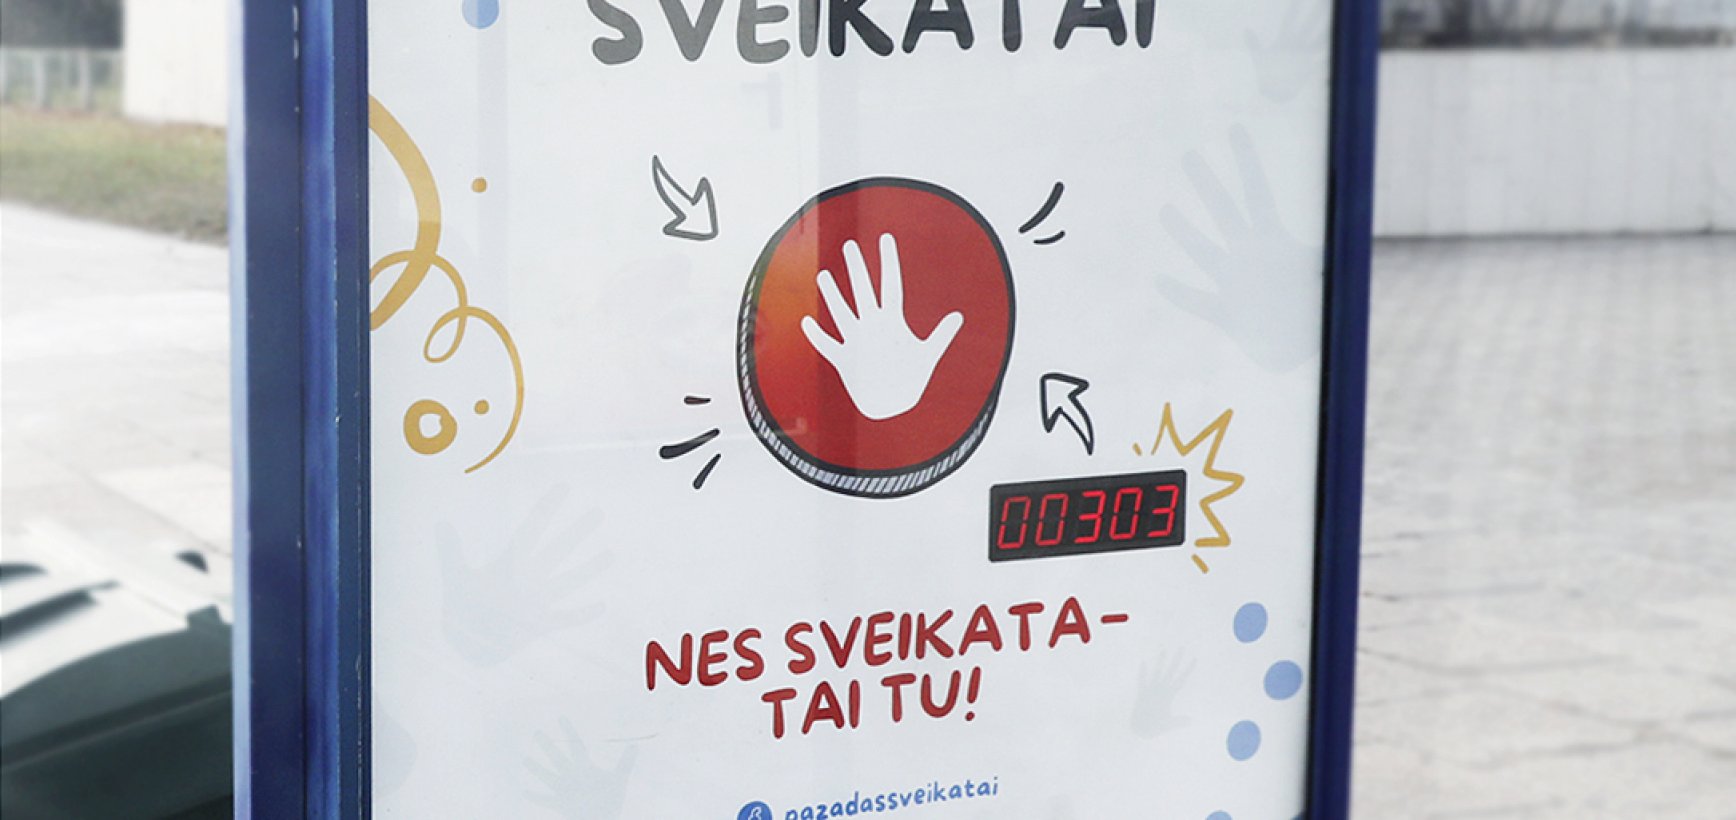 Interaktyvus reklamos sprendimas Lietuvoje:  sensorinis  pažadas savo sveikatai